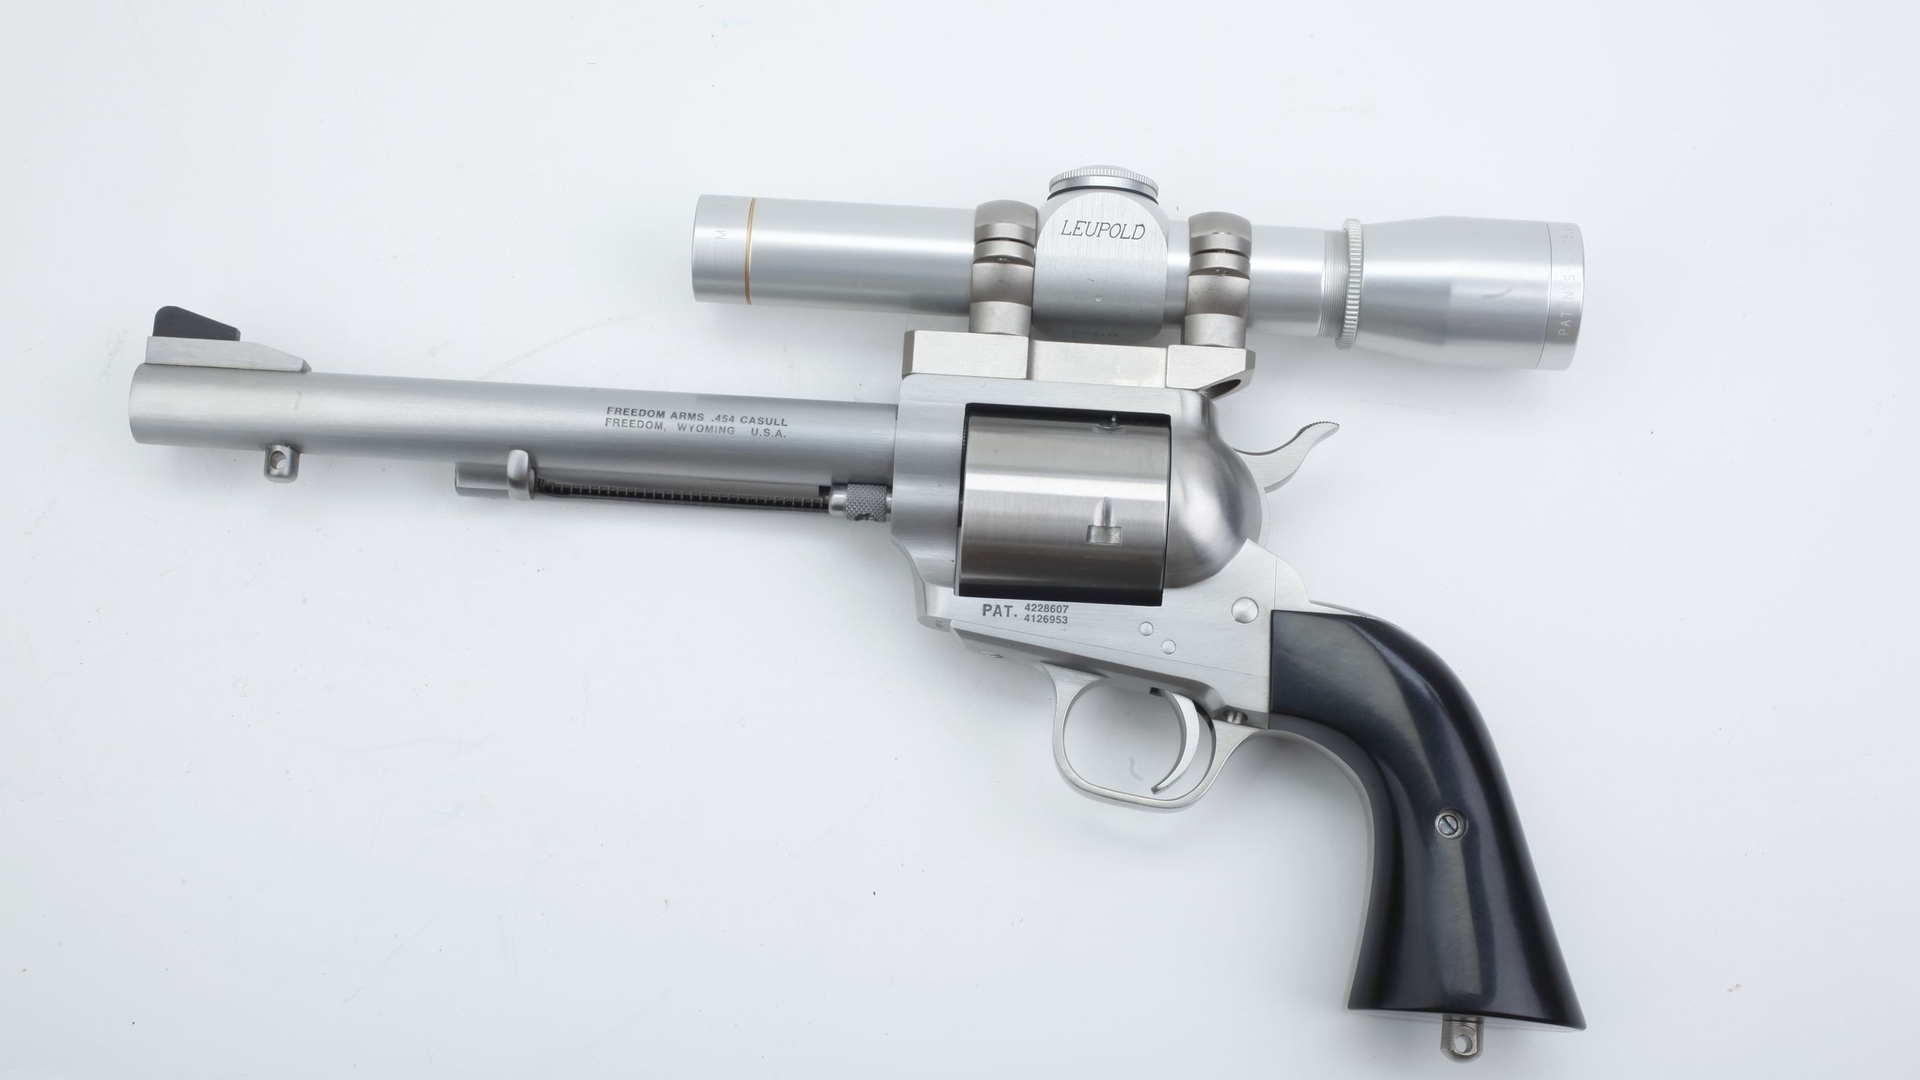 Скачать обои Револьвер Freedom Arms 454 Casull на телефон бесплатно